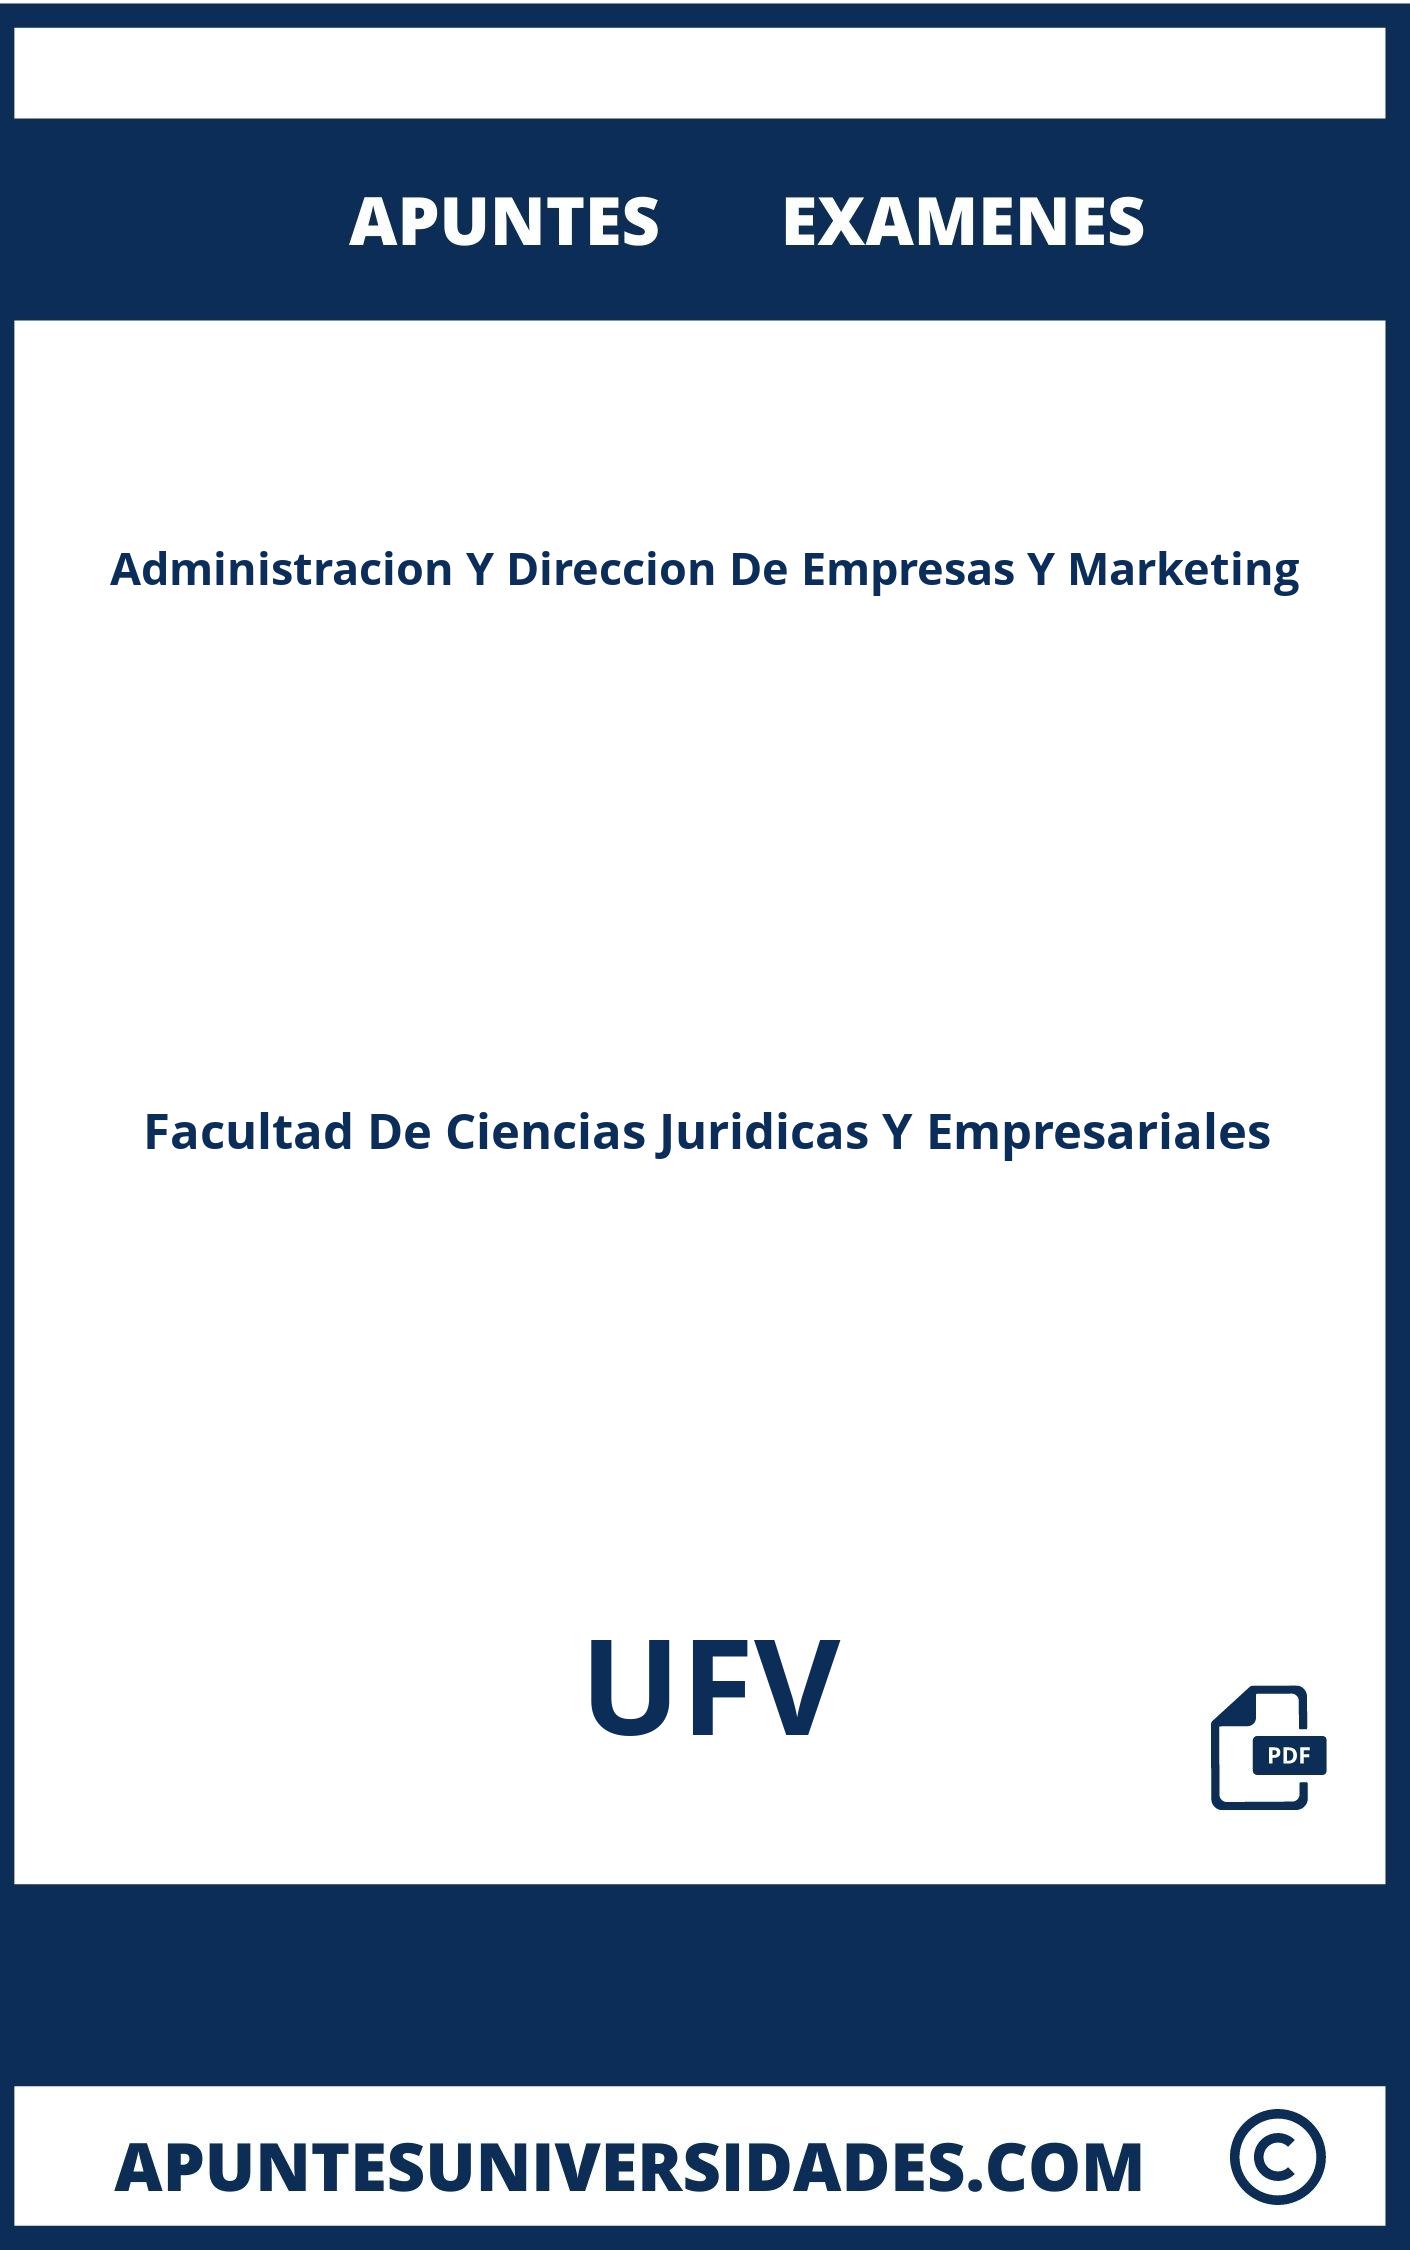 Examenes Apuntes Administracion Y Direccion De Empresas Y Marketing UFV